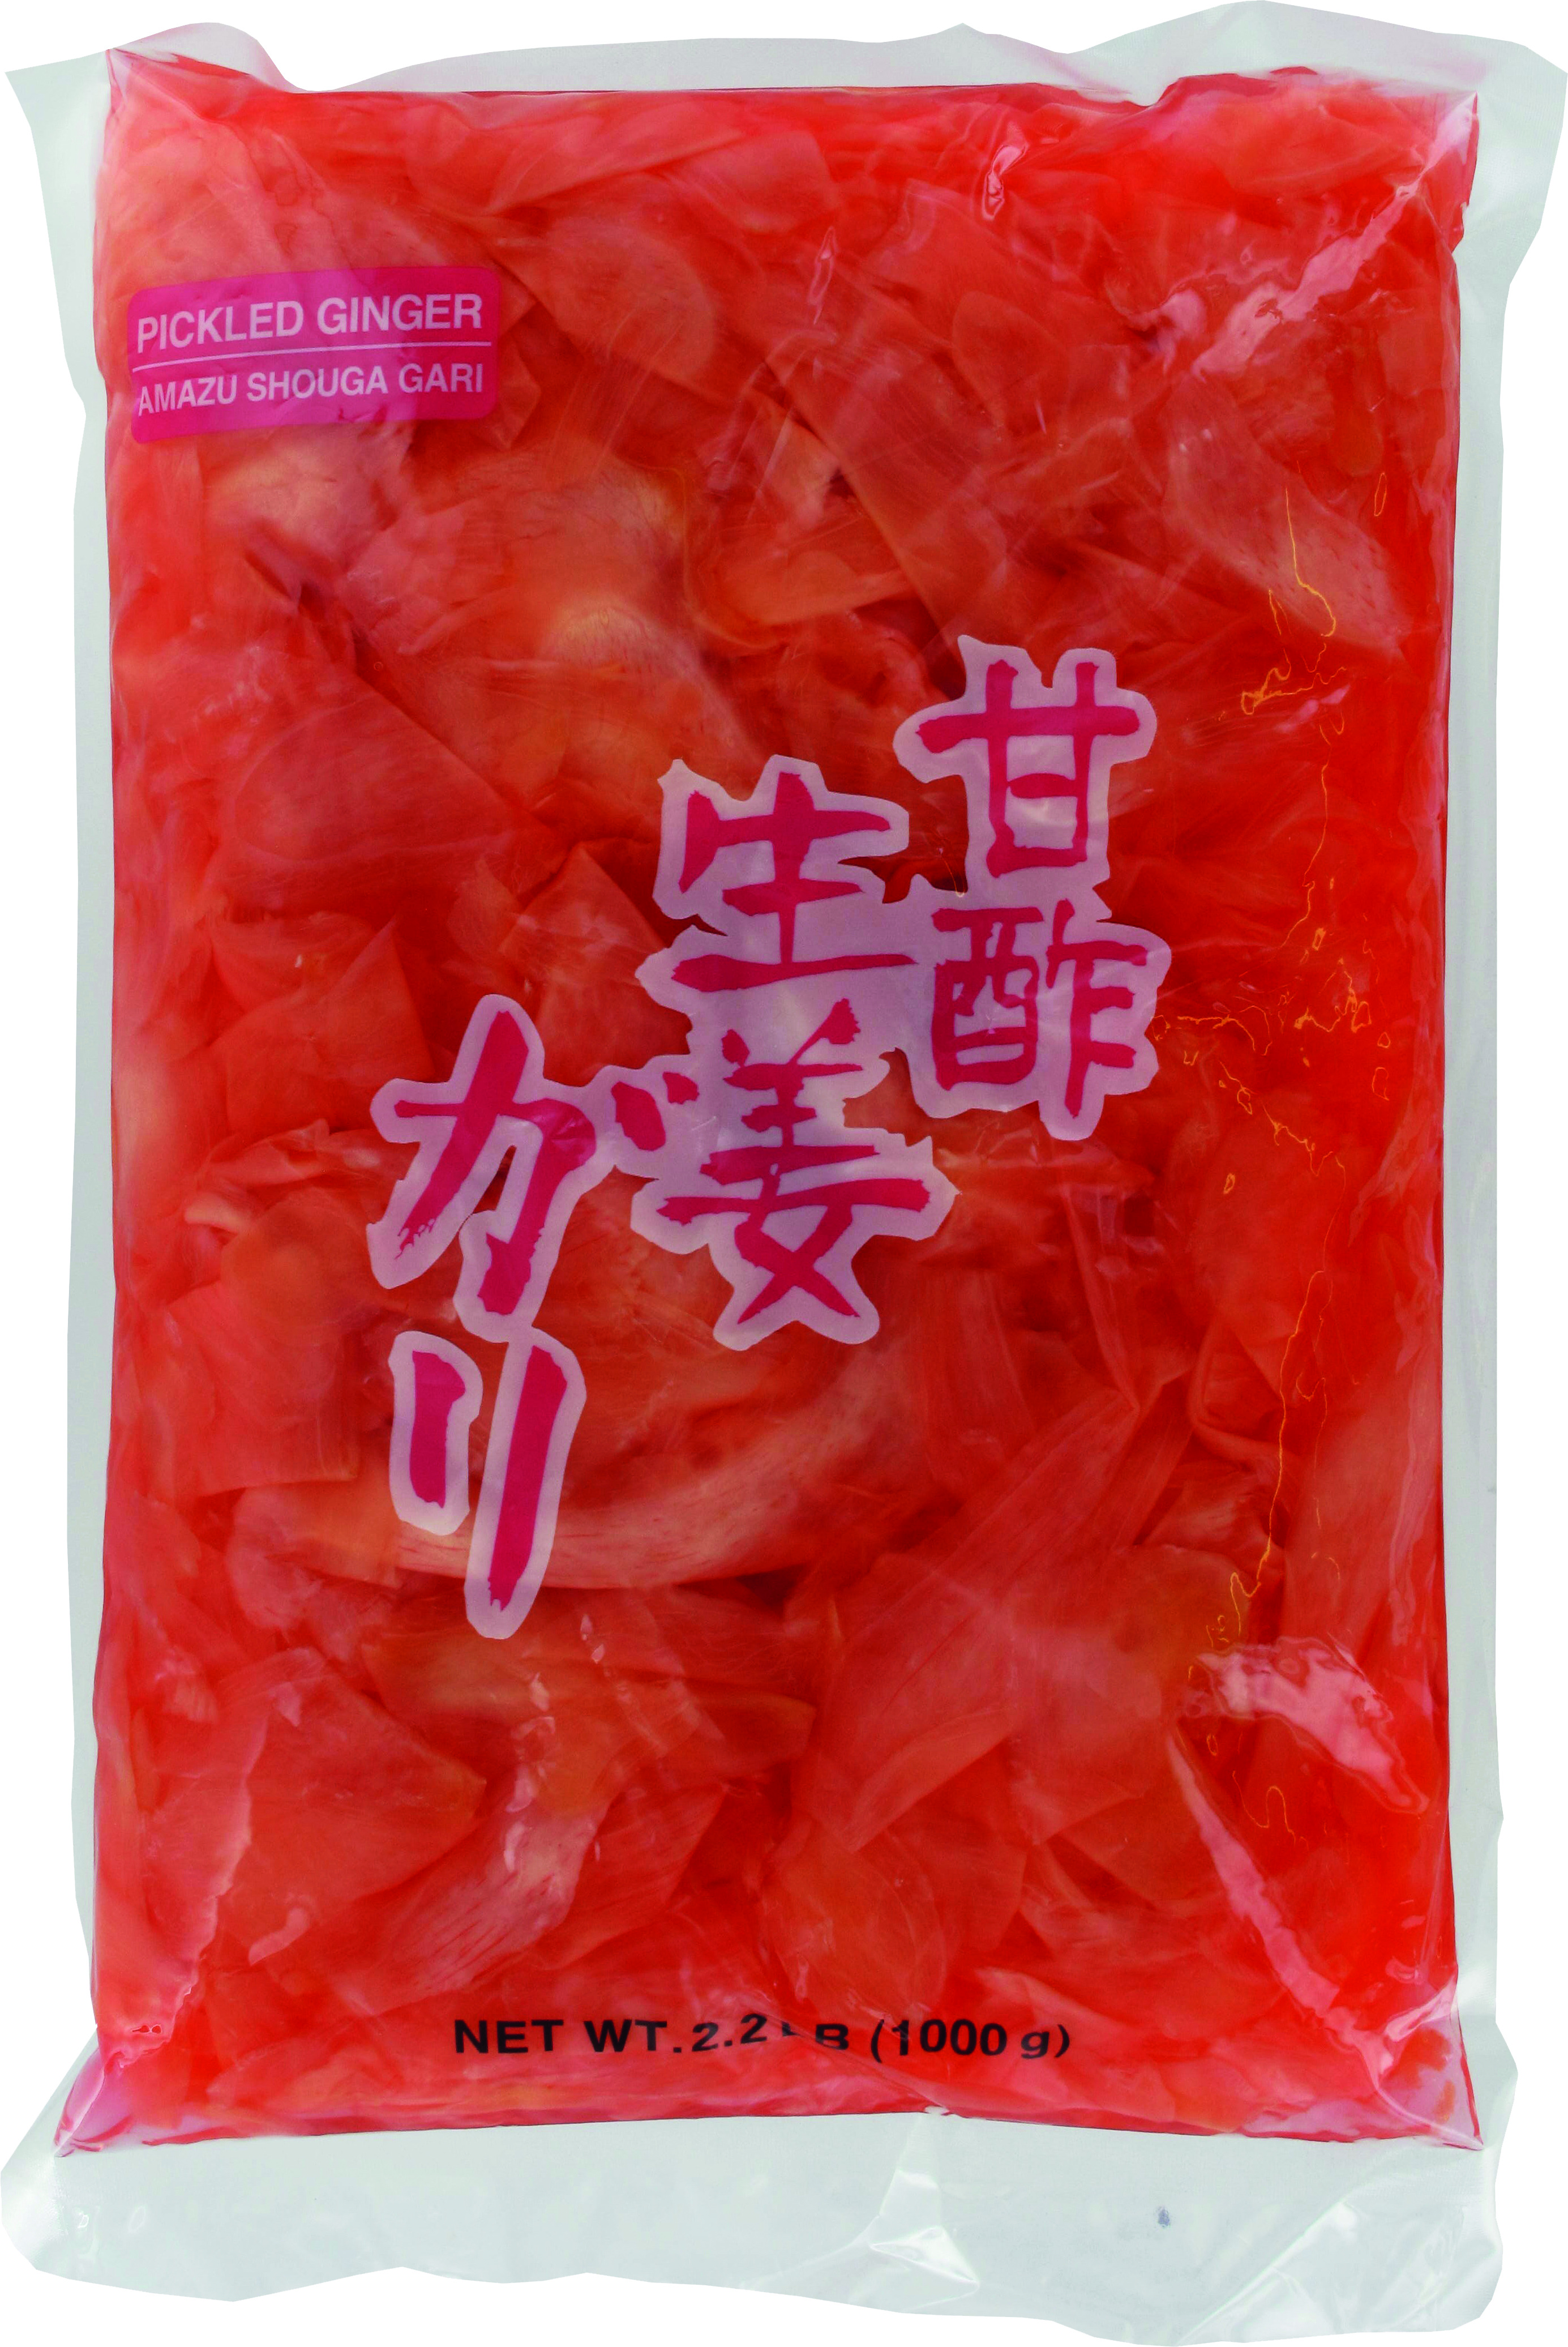 Zenzero Rosso A Fette 10 X 1,5 Kg - Lv Zheng Food